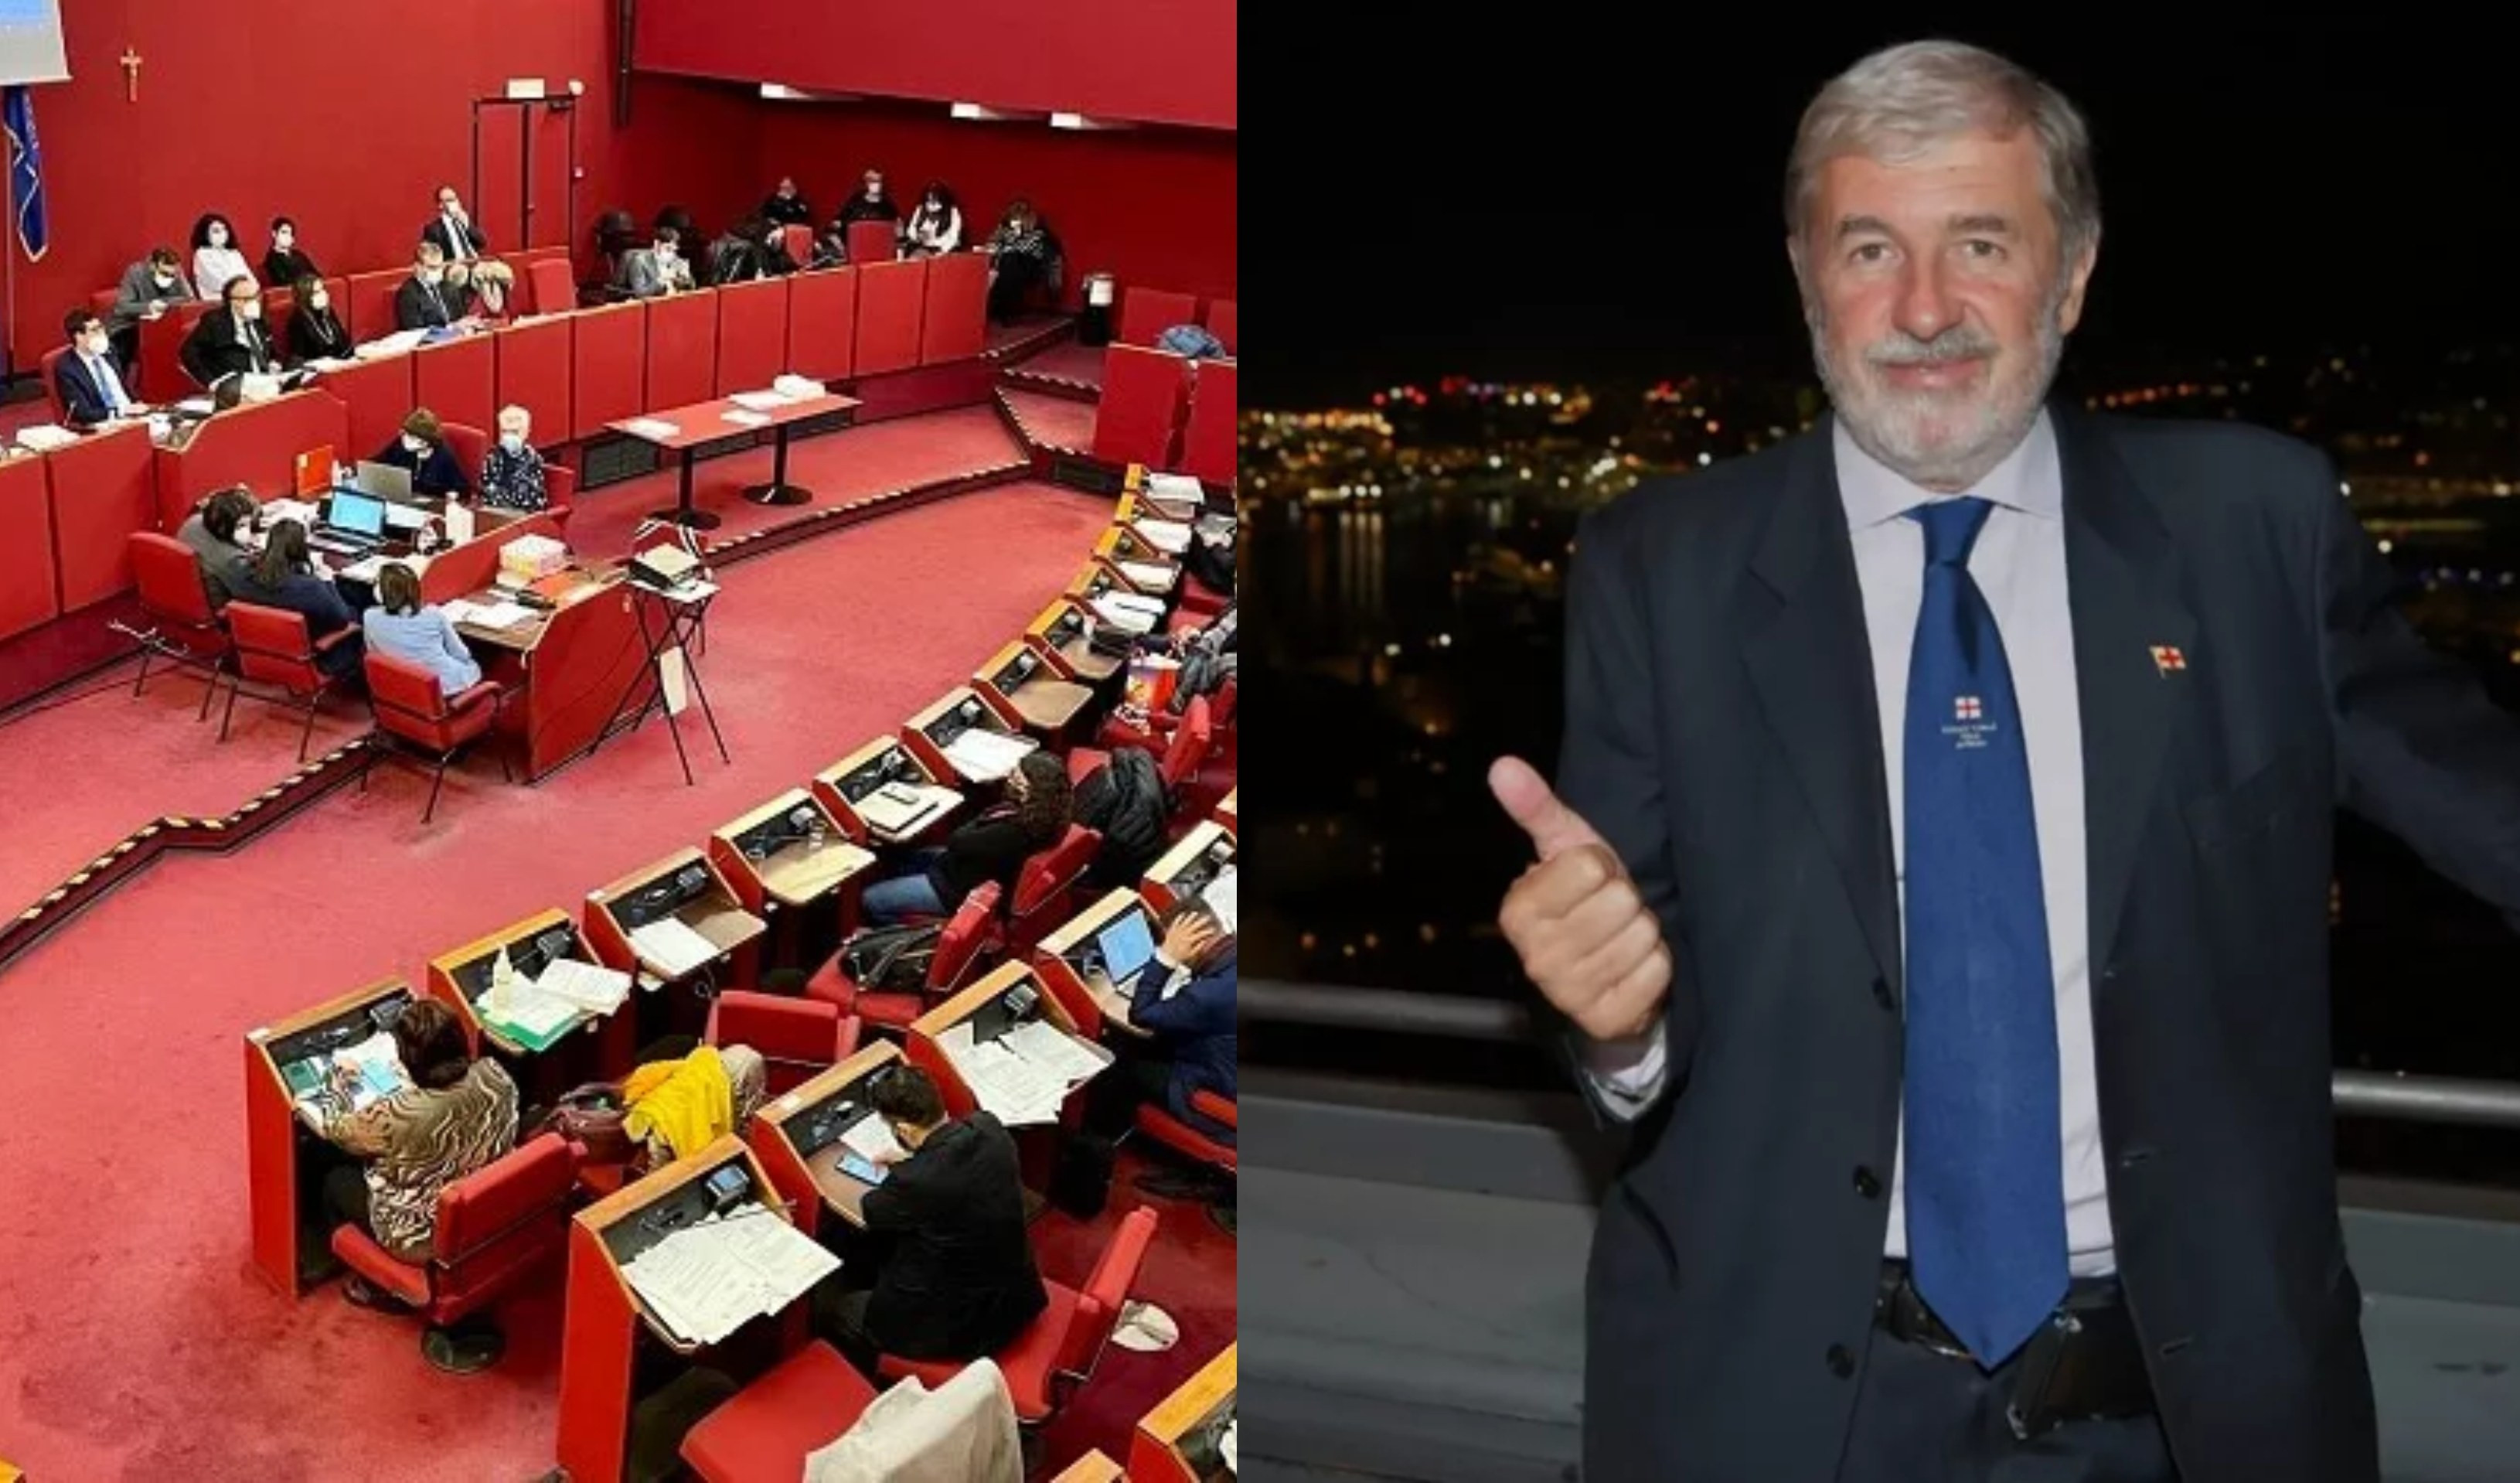 Riconteggio voti a Genova: Bucci proclamato sindaco, confermati i municipi in bilico